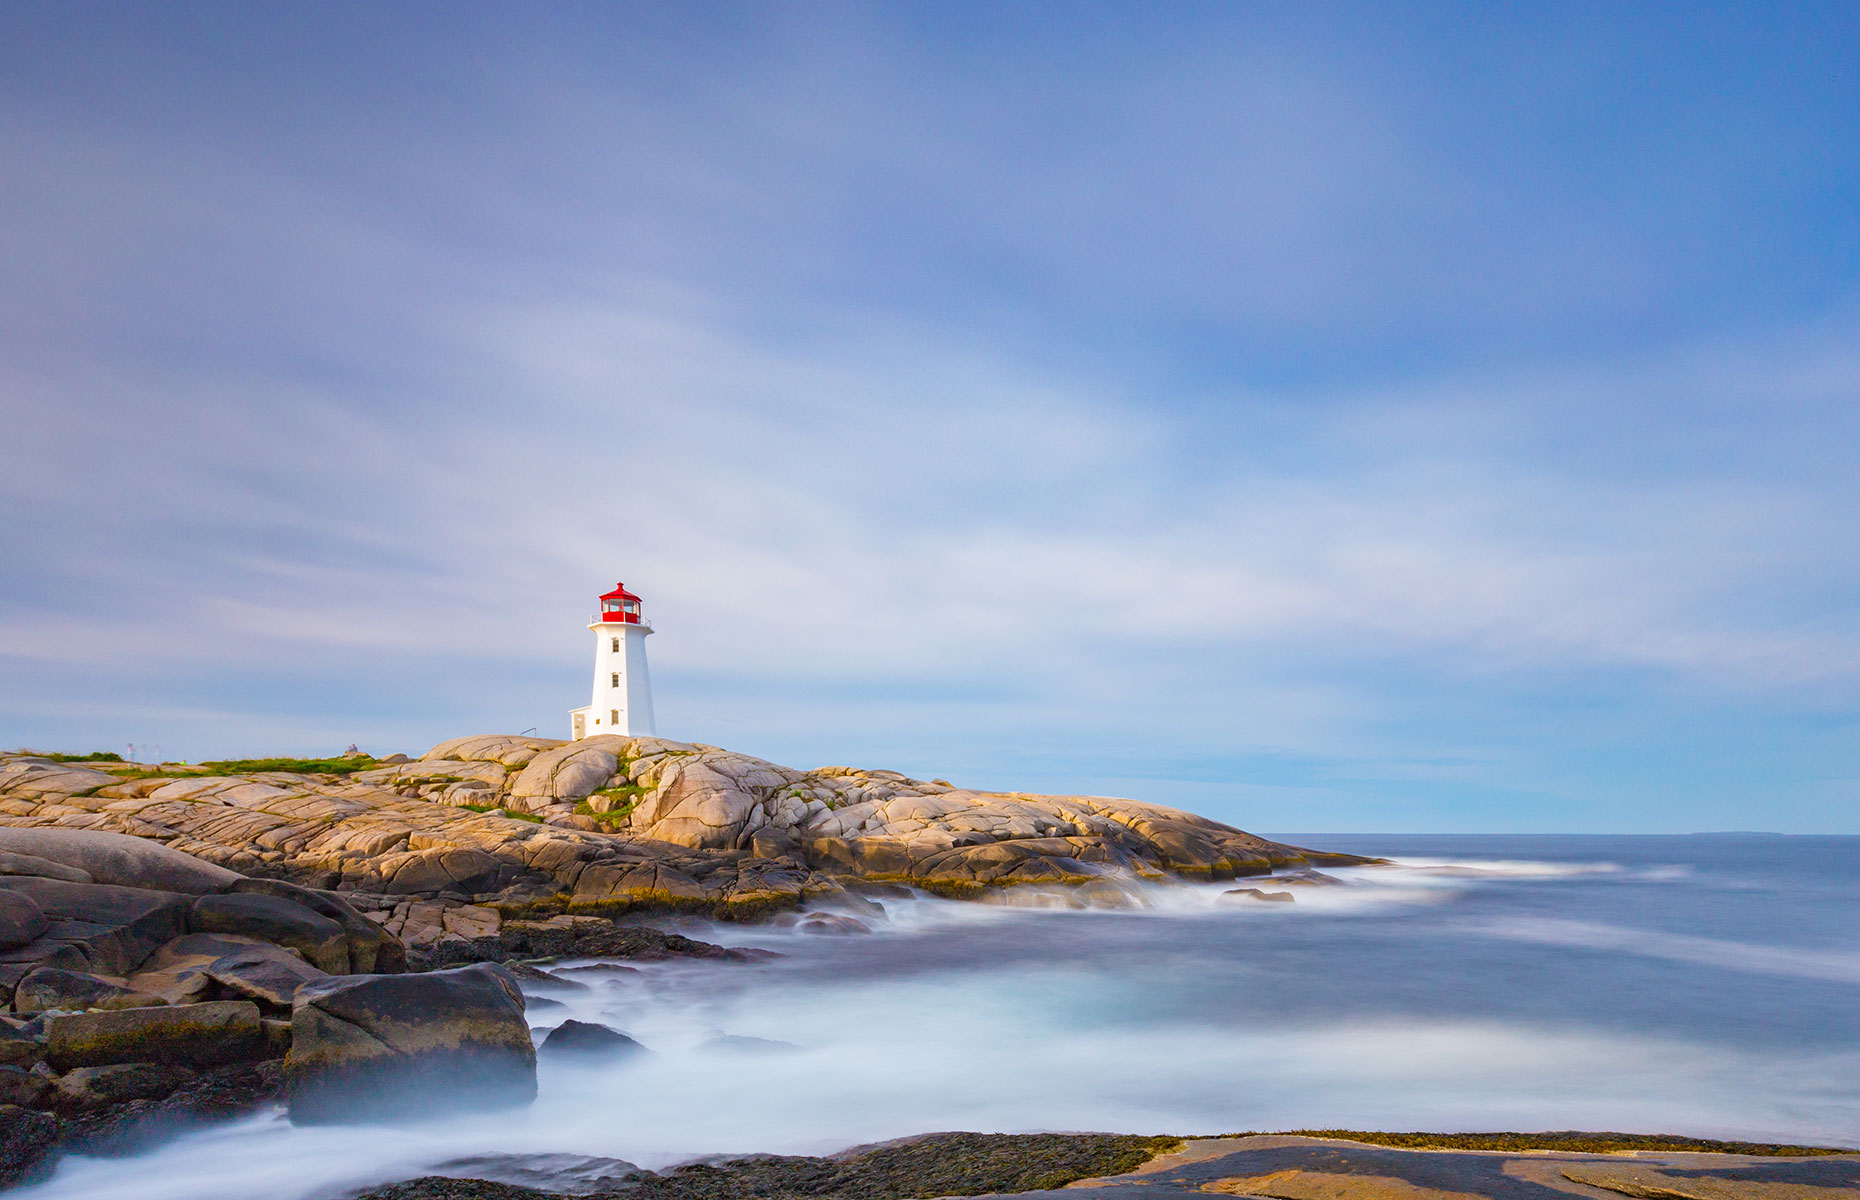 Peggy's Cove, Nova Scotia (Image: Acorn Art Photography/Tourism Nova Scotia)